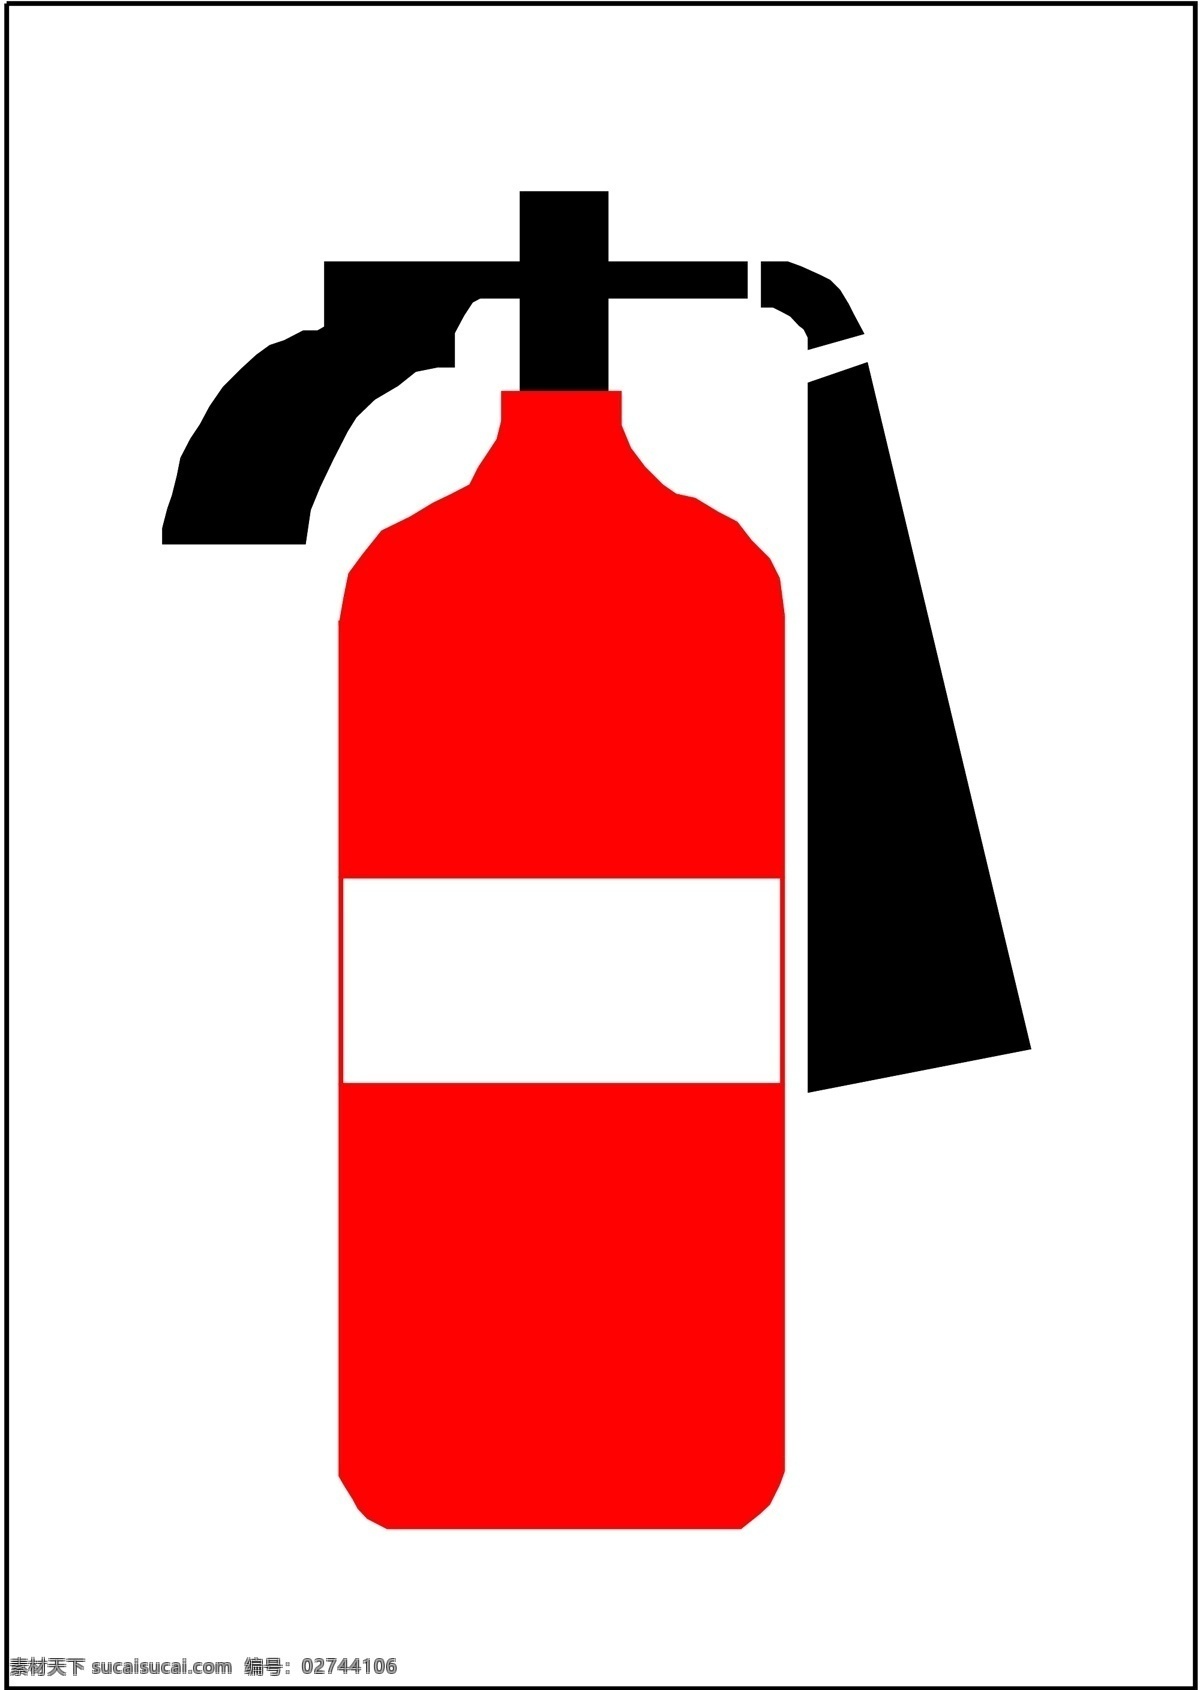 消防标识 灭火器 图标 标识 示意牌 指示牌 示意图 指示图 卡通 矢量 标识标志图标 公共标识标志 矢量图标 矢量图库